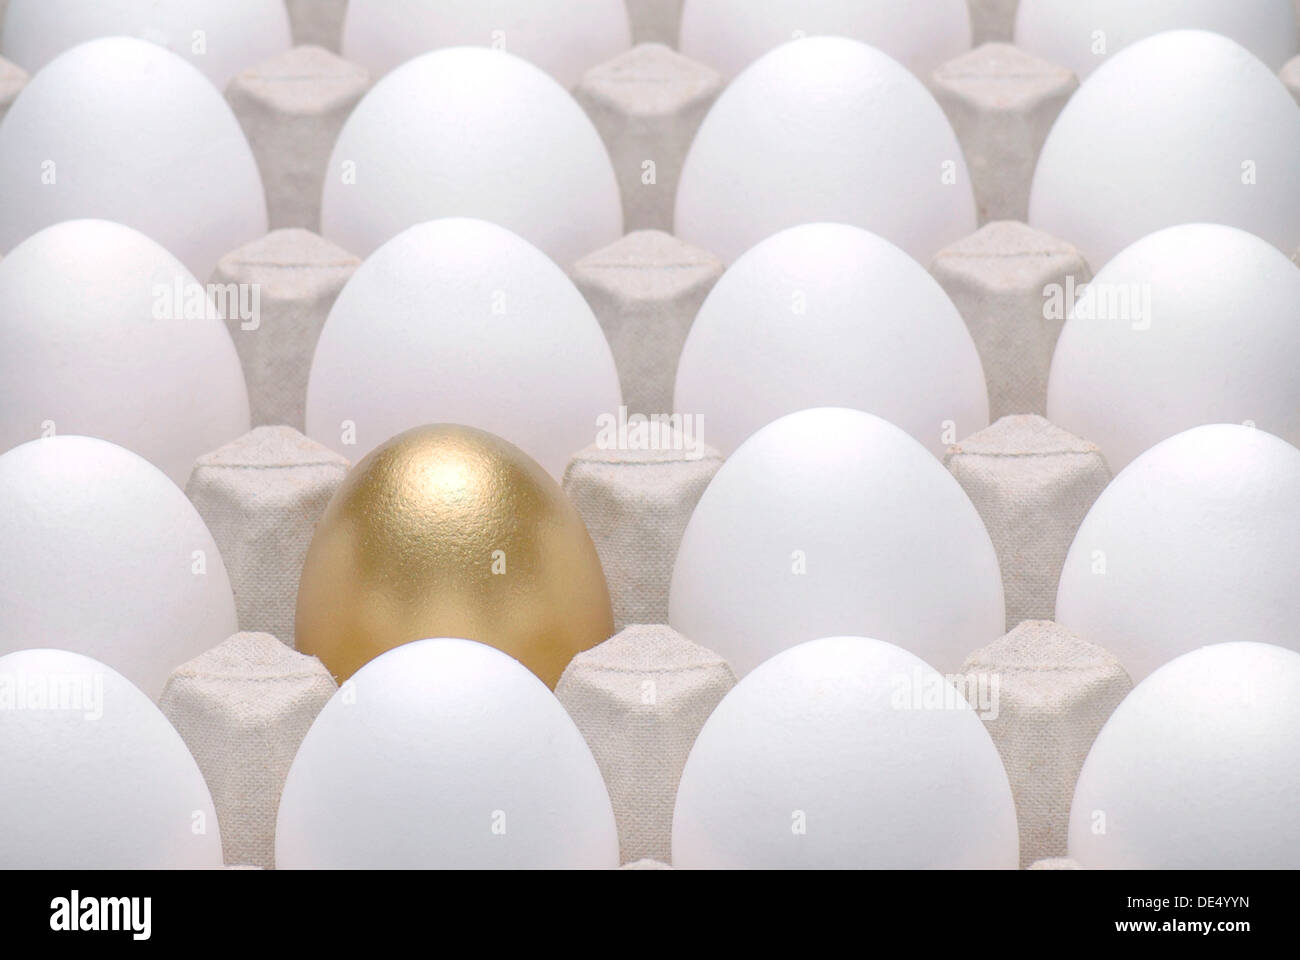 Golden Egg in mezzo le uova bianche, immagine simbolica per essere diversi, in piedi fuori dalla folla Foto Stock